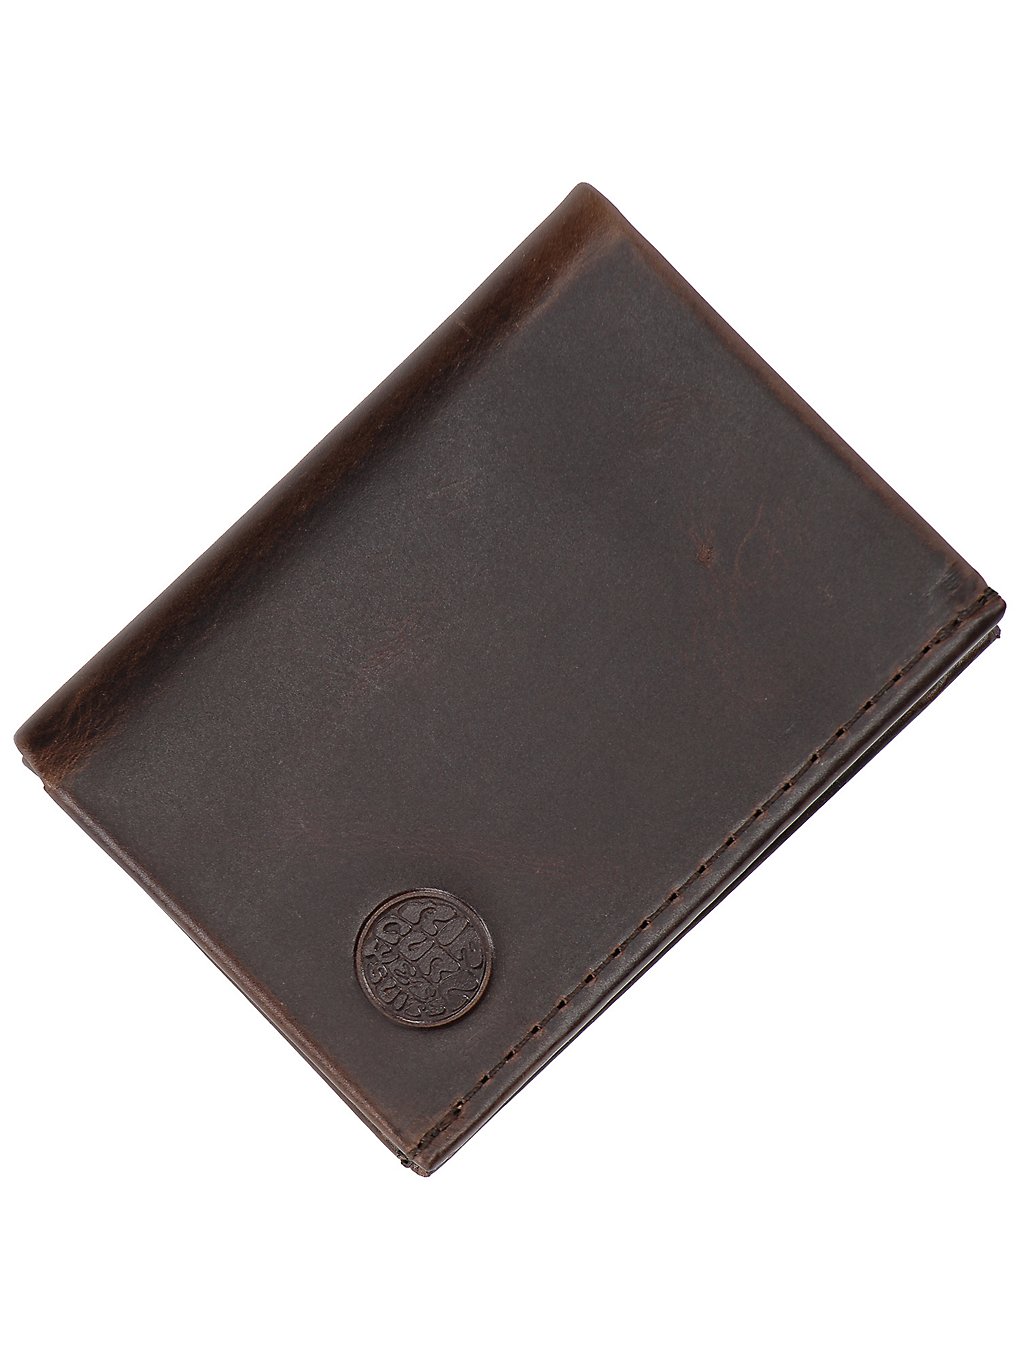 Rip Curl Texas RFID Slim Wallet brown